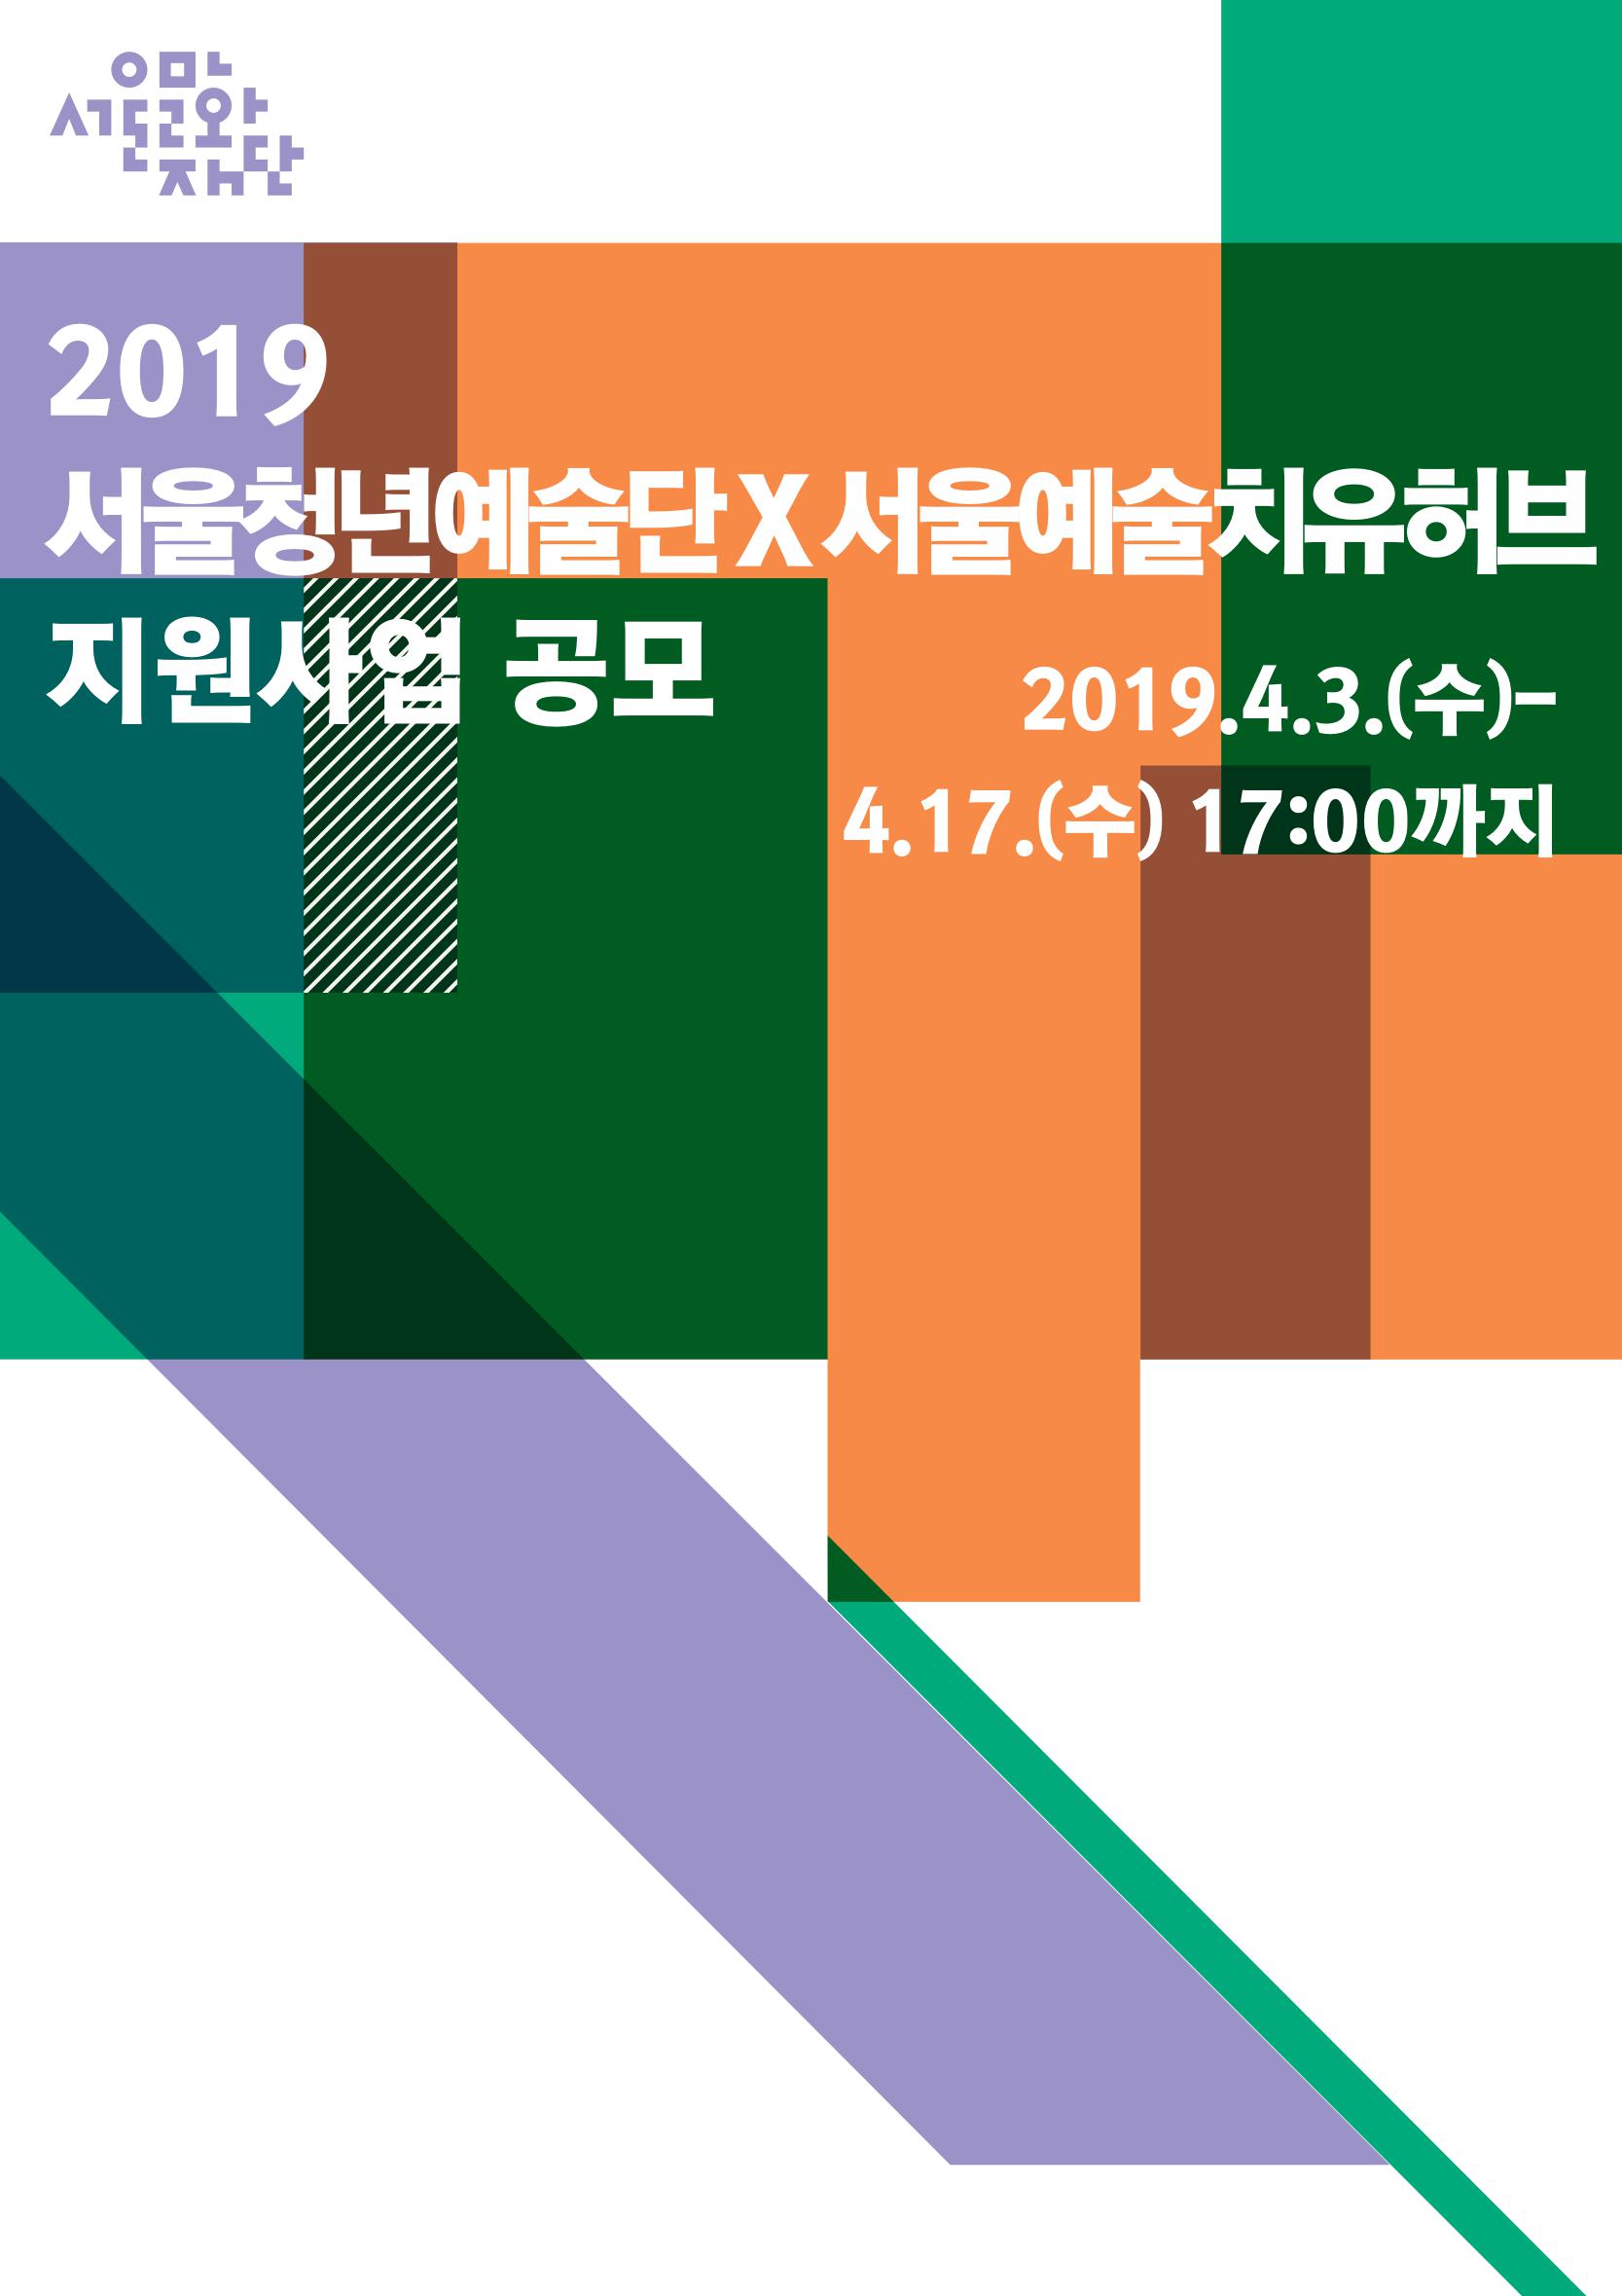 2019 서울청년예술단X서울예술치유허브